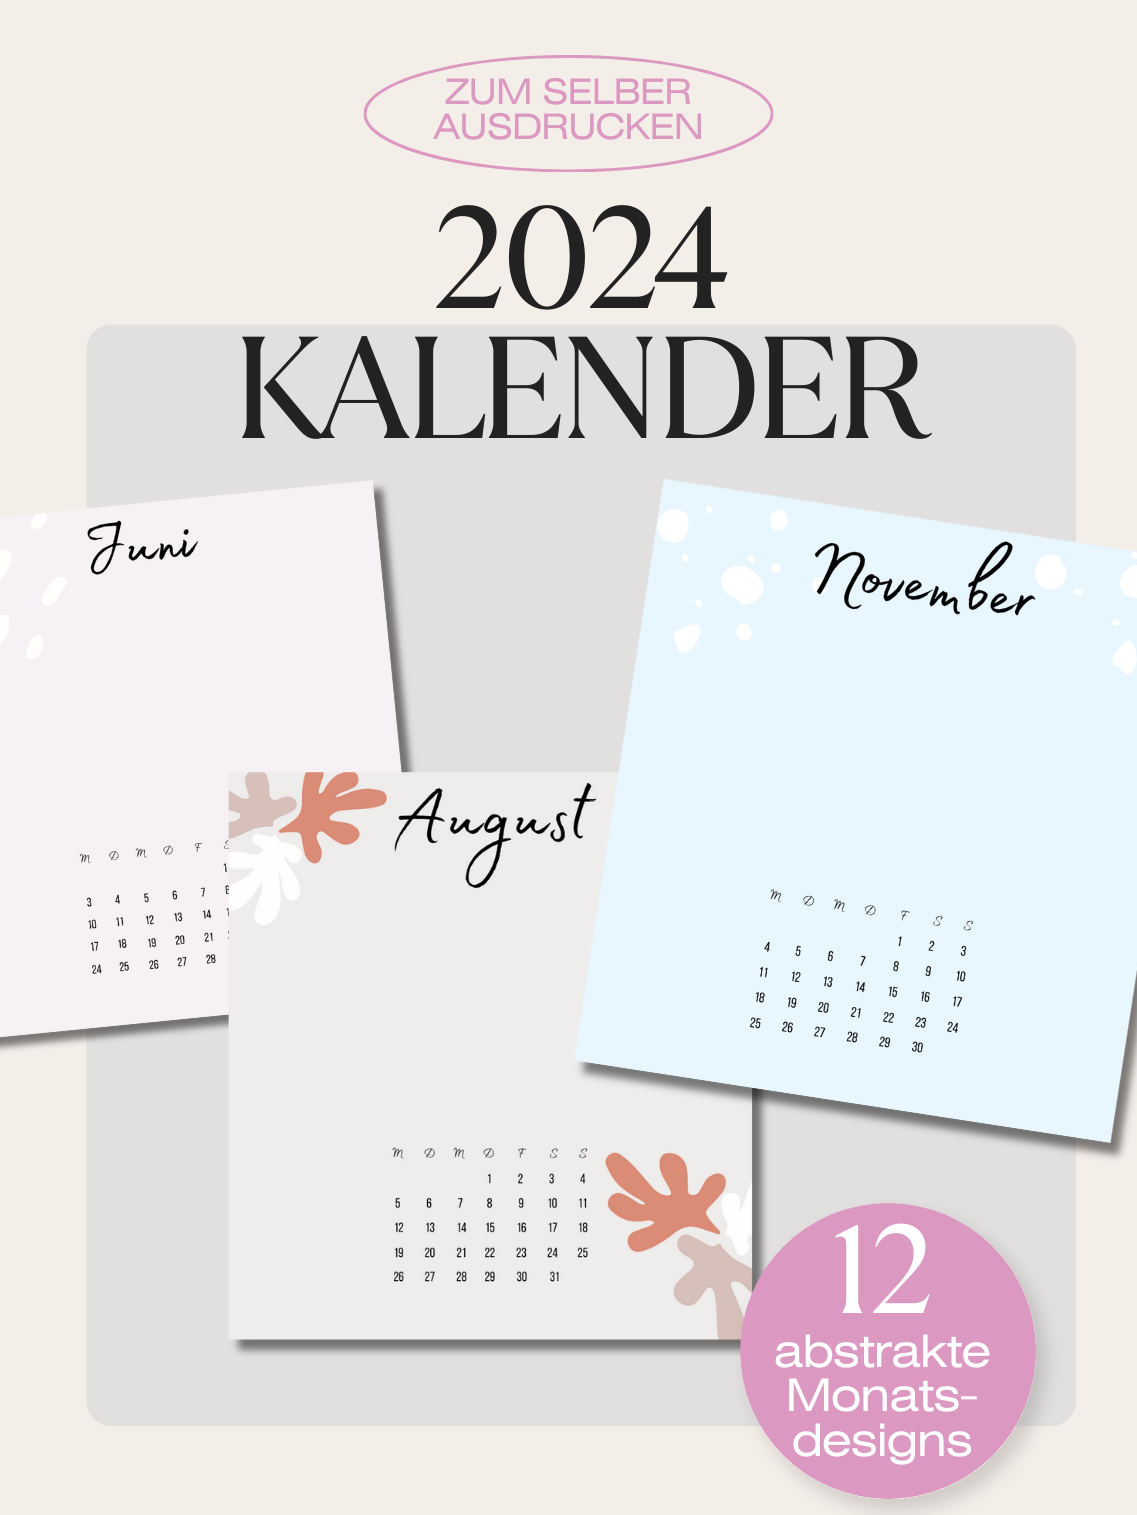 Kalender 2024 abstrakt - digitales Produkt!